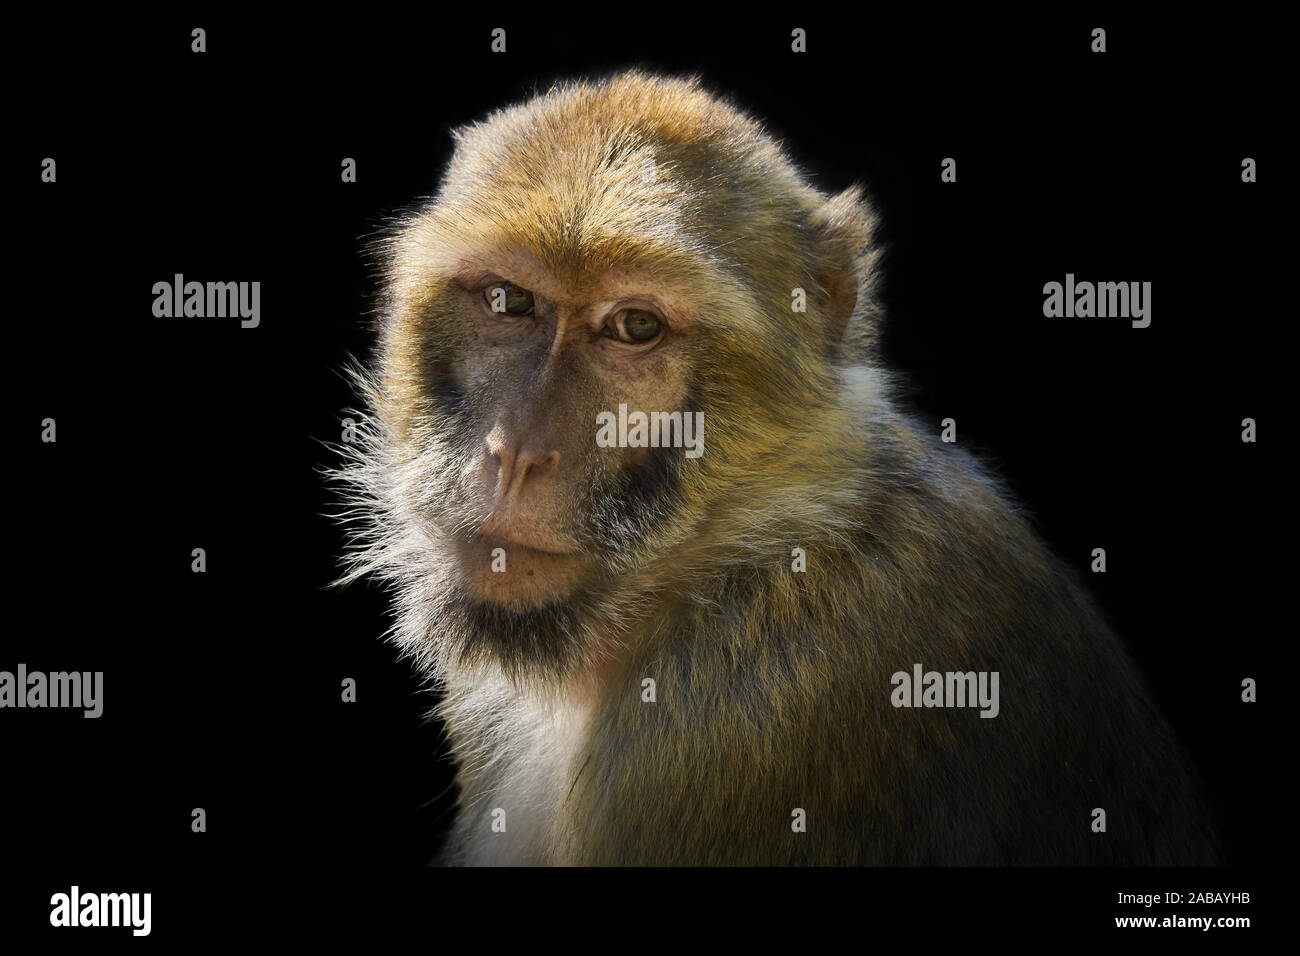 monkey portrait isolated on black background Stock Photo